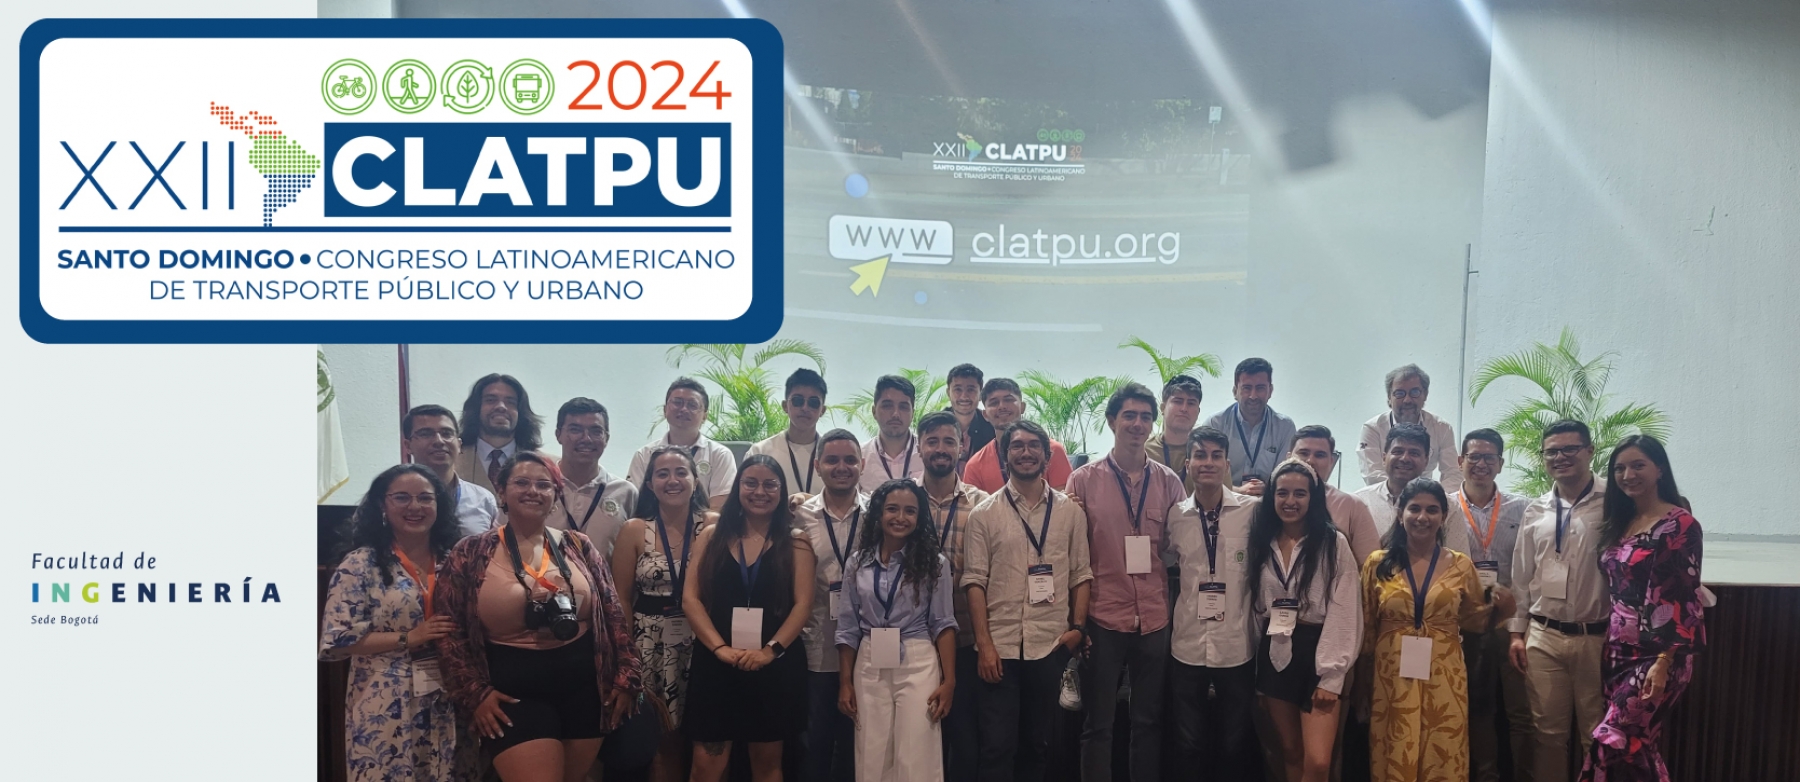 Estudiantes y profesores de la Facultad de Ingeniería de la Universidad Nacional de Colombia se destacan en Congreso Latinoamericano de Transporte Público y Urbano en República Dominicana